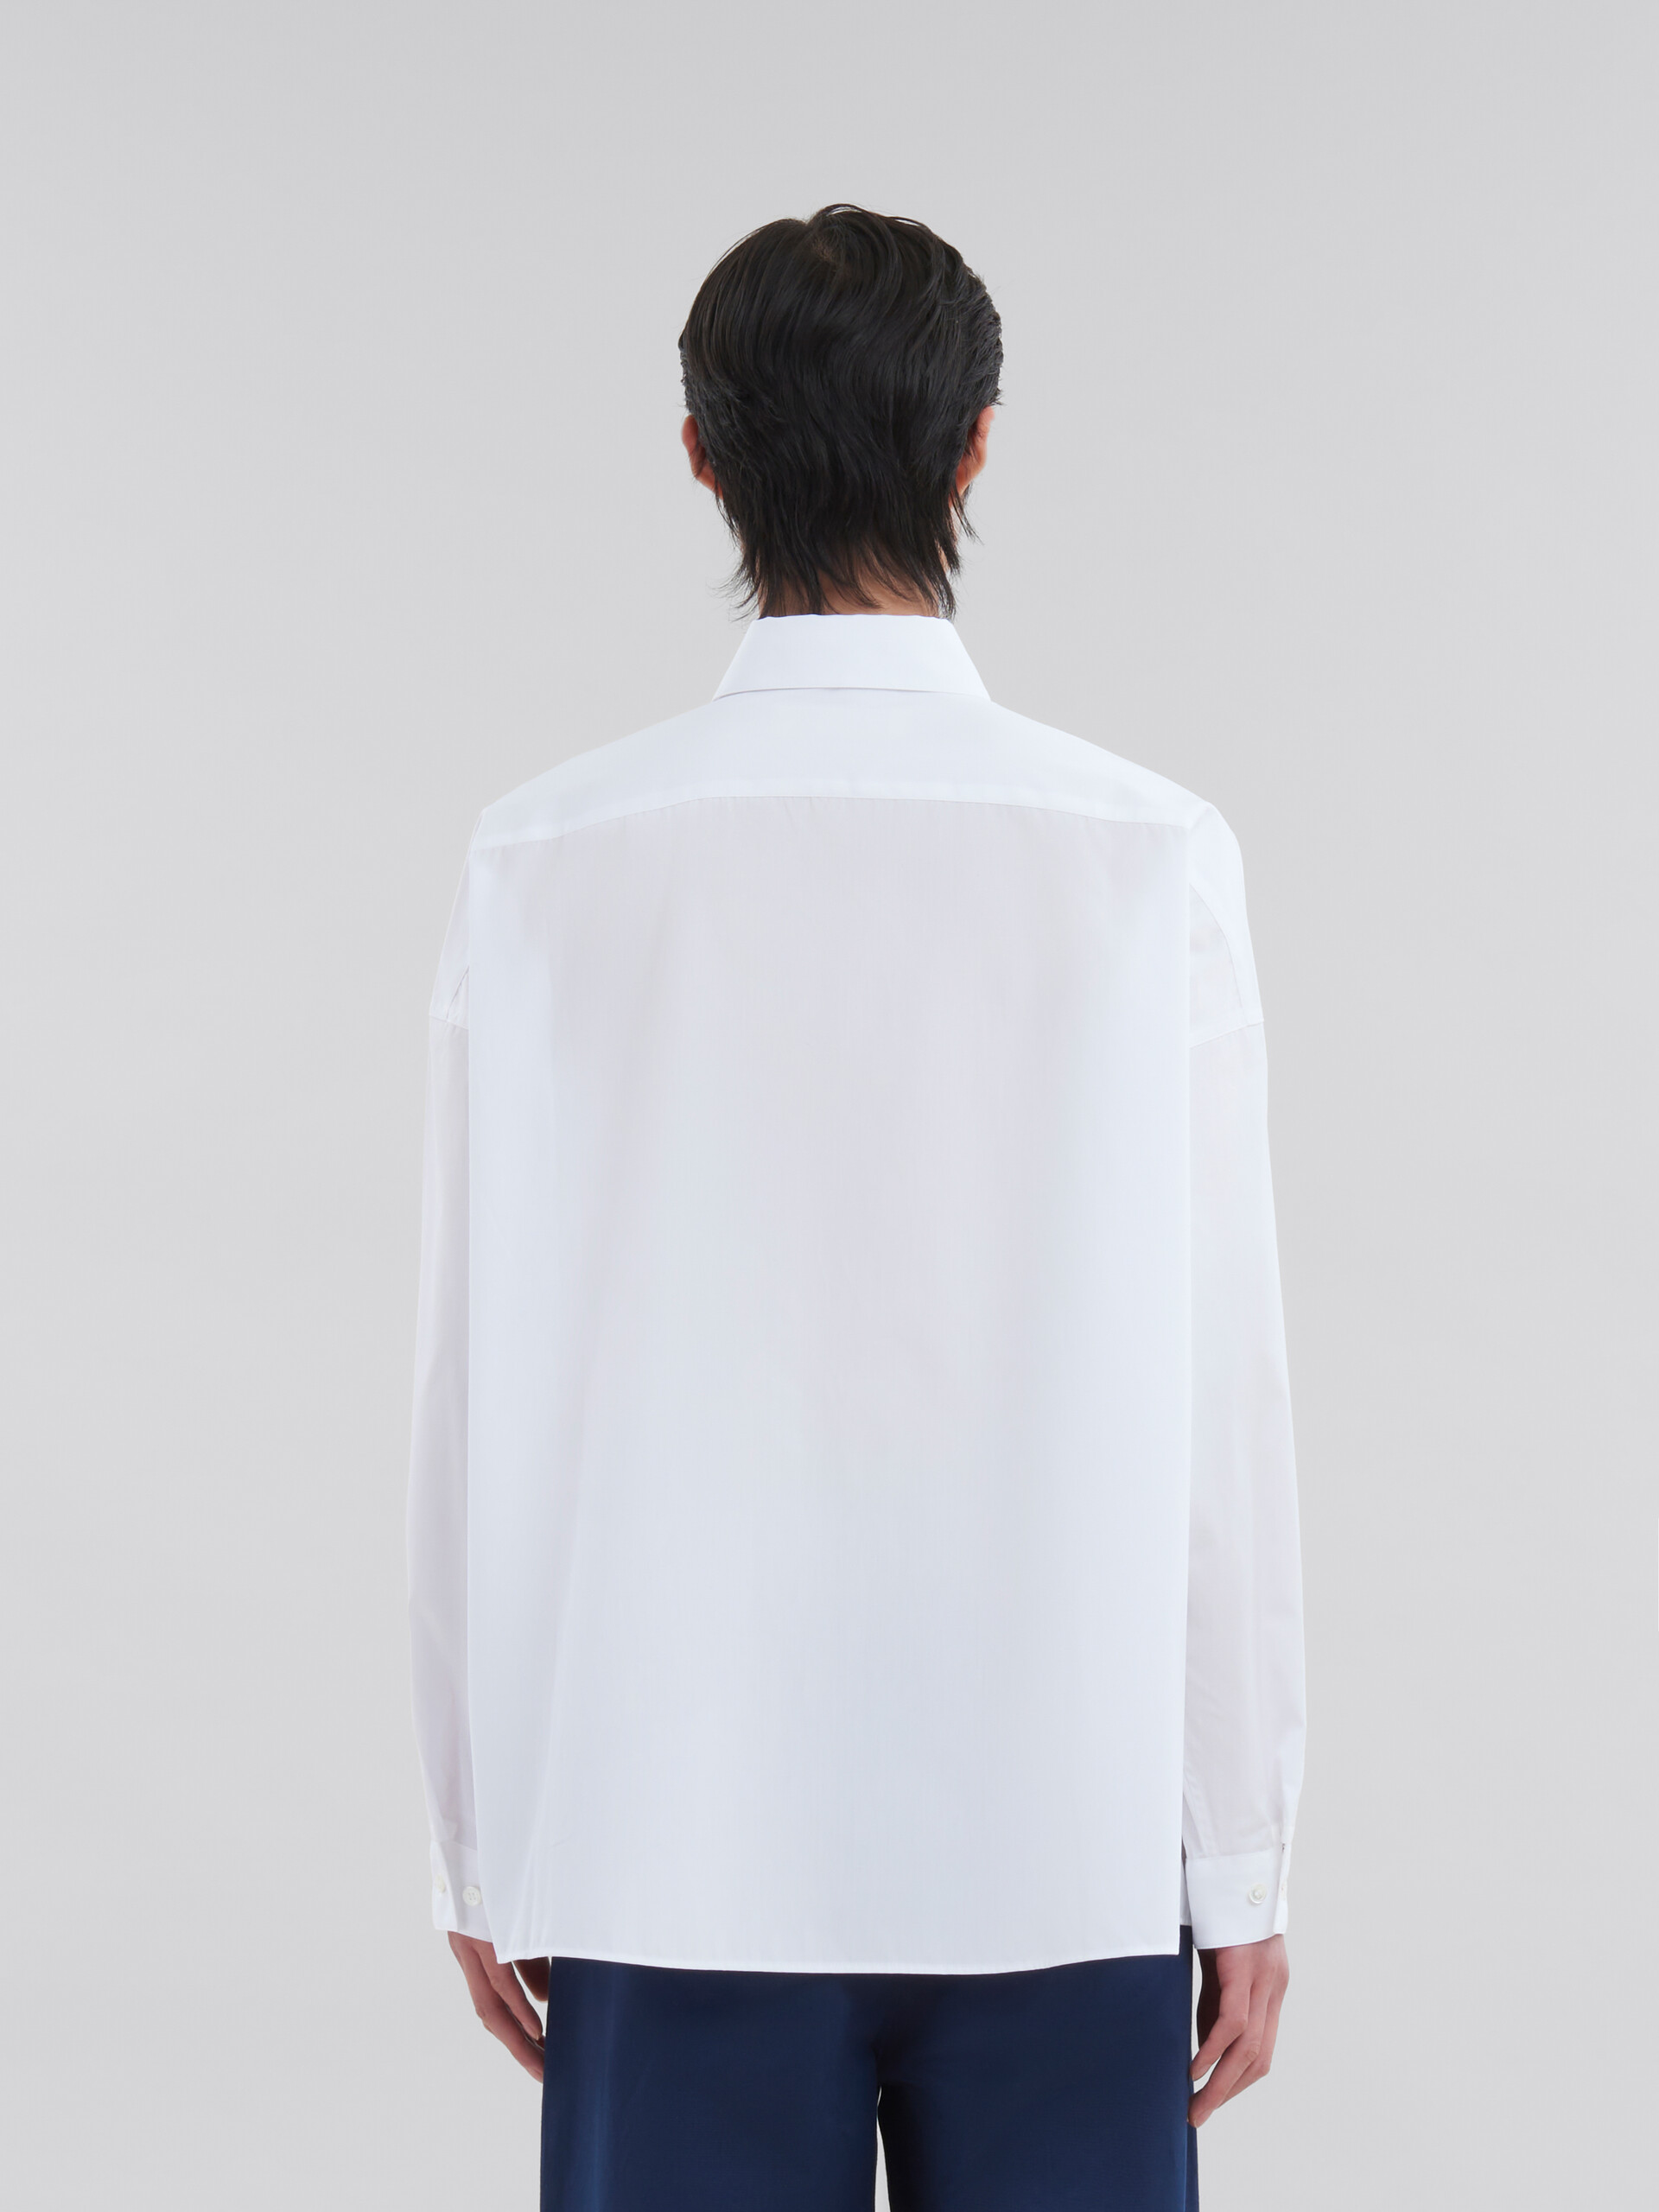 ライトブルー オーガニックポプリン製シャツ、ちらりとのぞくマルニロゴ - シャツ - Image 3